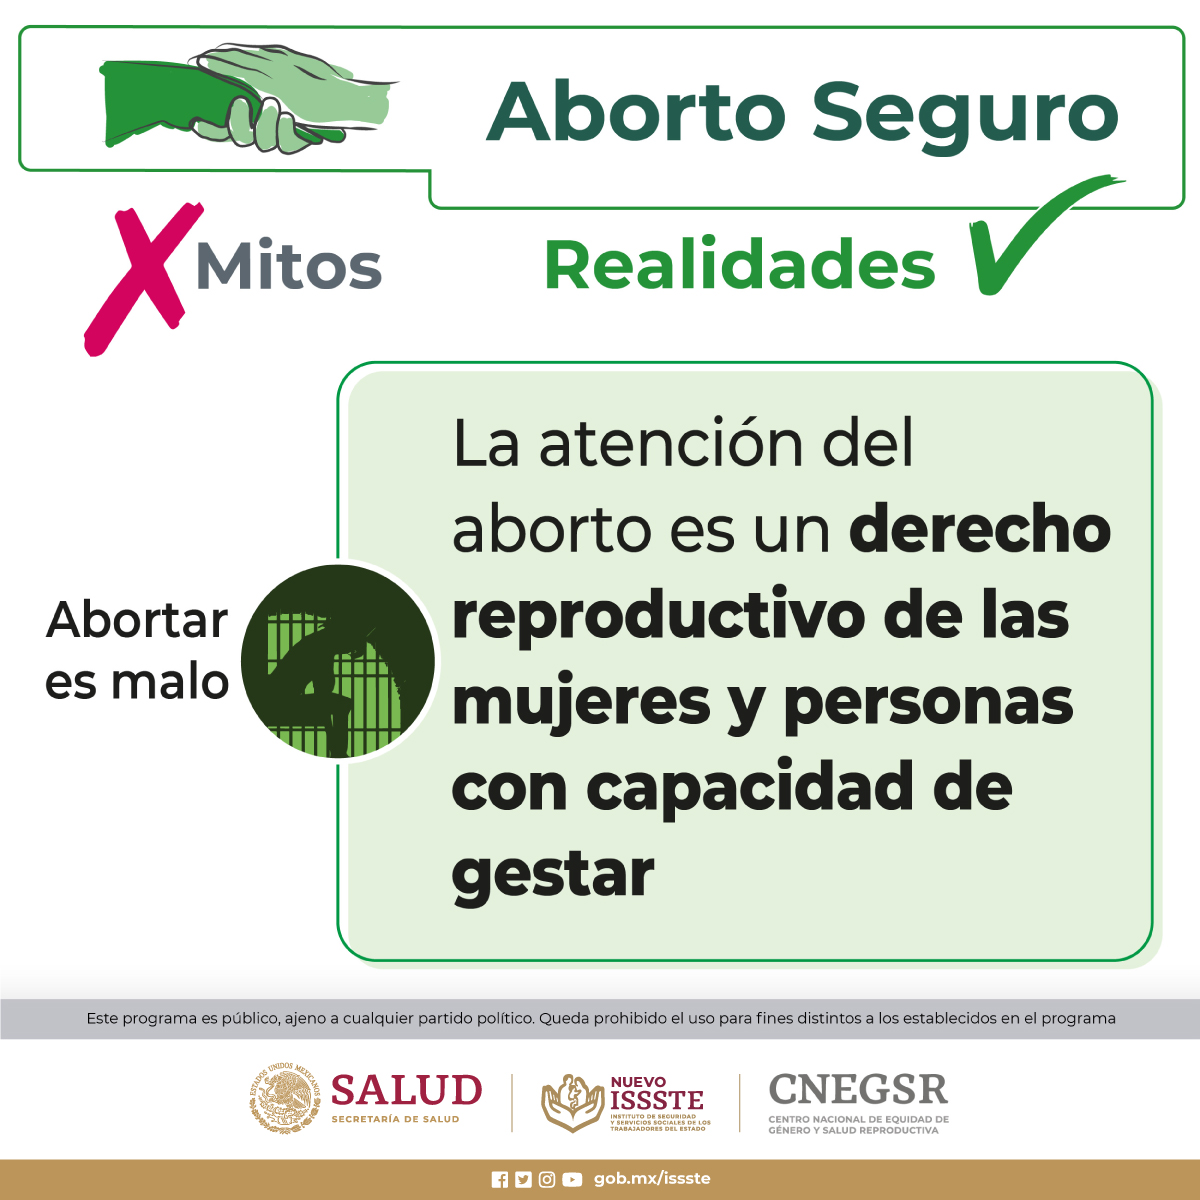 ✅ ABORTO SEGURO ✅
¿SabíasQue?...
#AbortoSeguro #Nom046